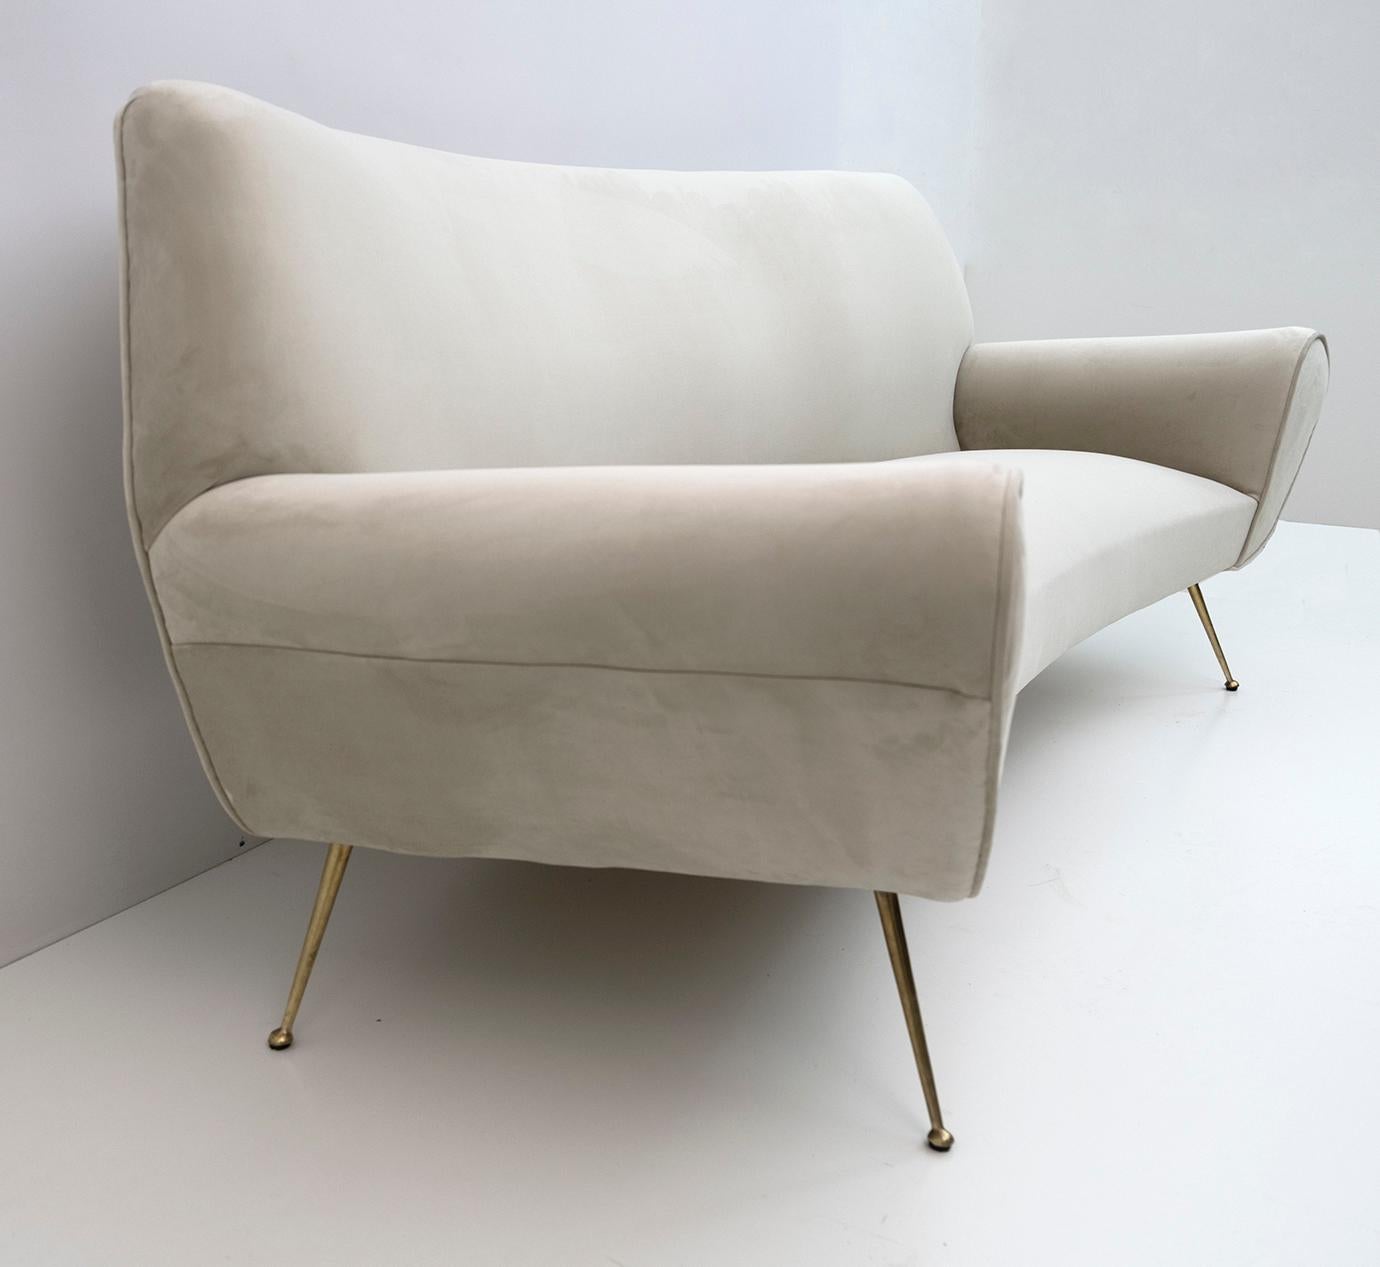 Gigi Radice Mid-Century Modern Italian Velvet Curved Sofa for Minotti, 1950s For Sale 3